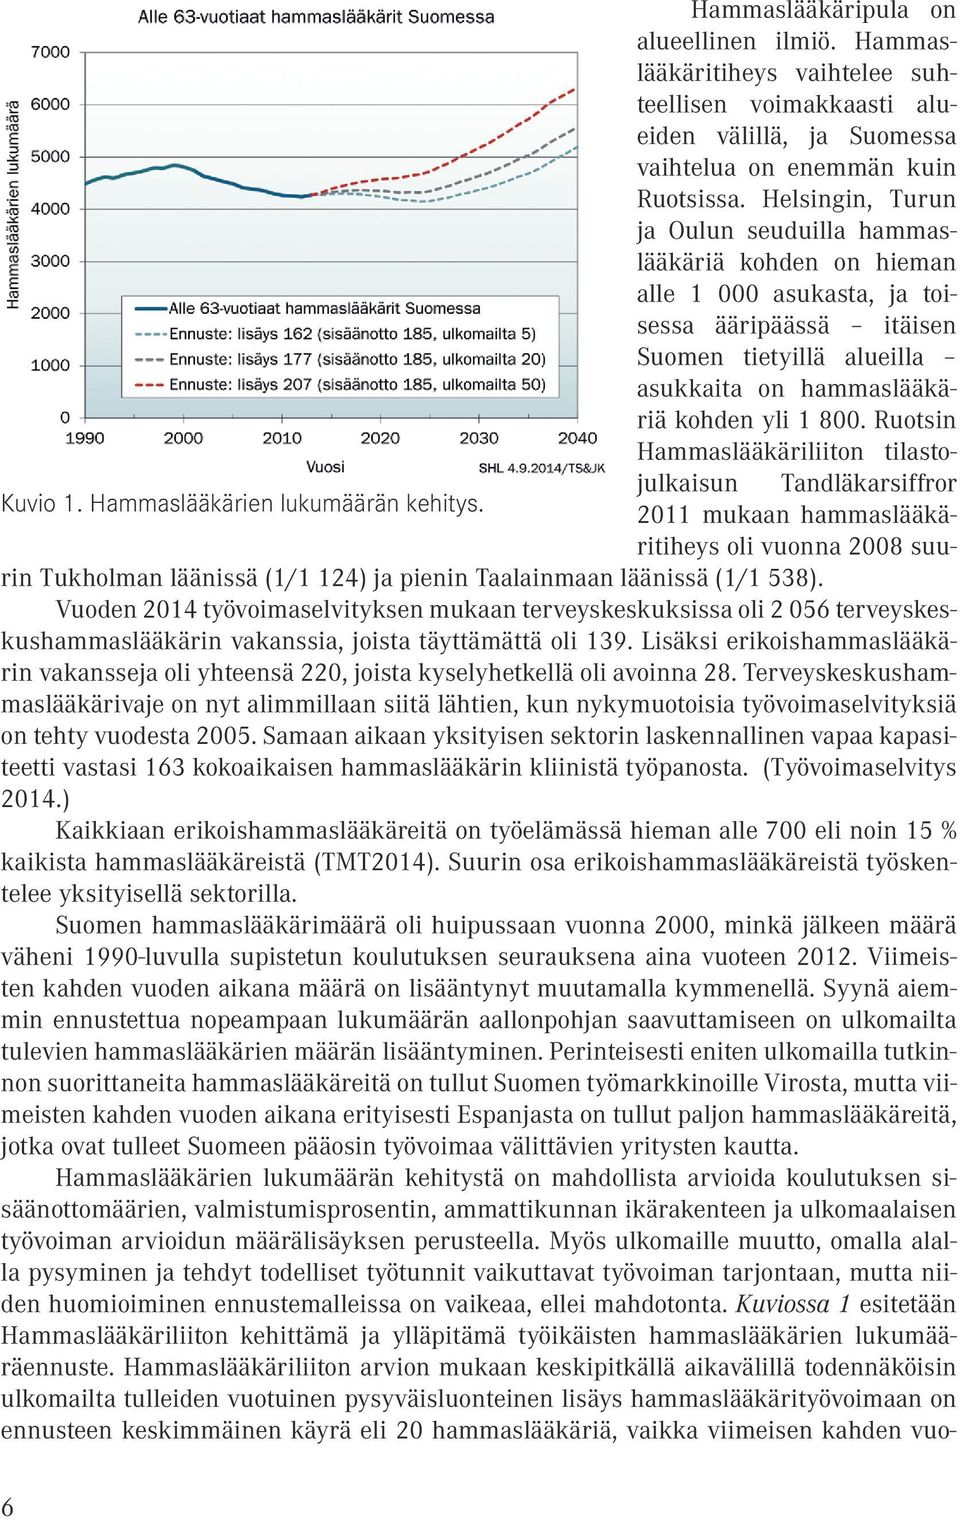 Ruotsi Hammaslääkäriliito tilastojulkaisu Tadläkarsiffror Kuvio 1. Hammaslääkärie lukumäärä kehitys.